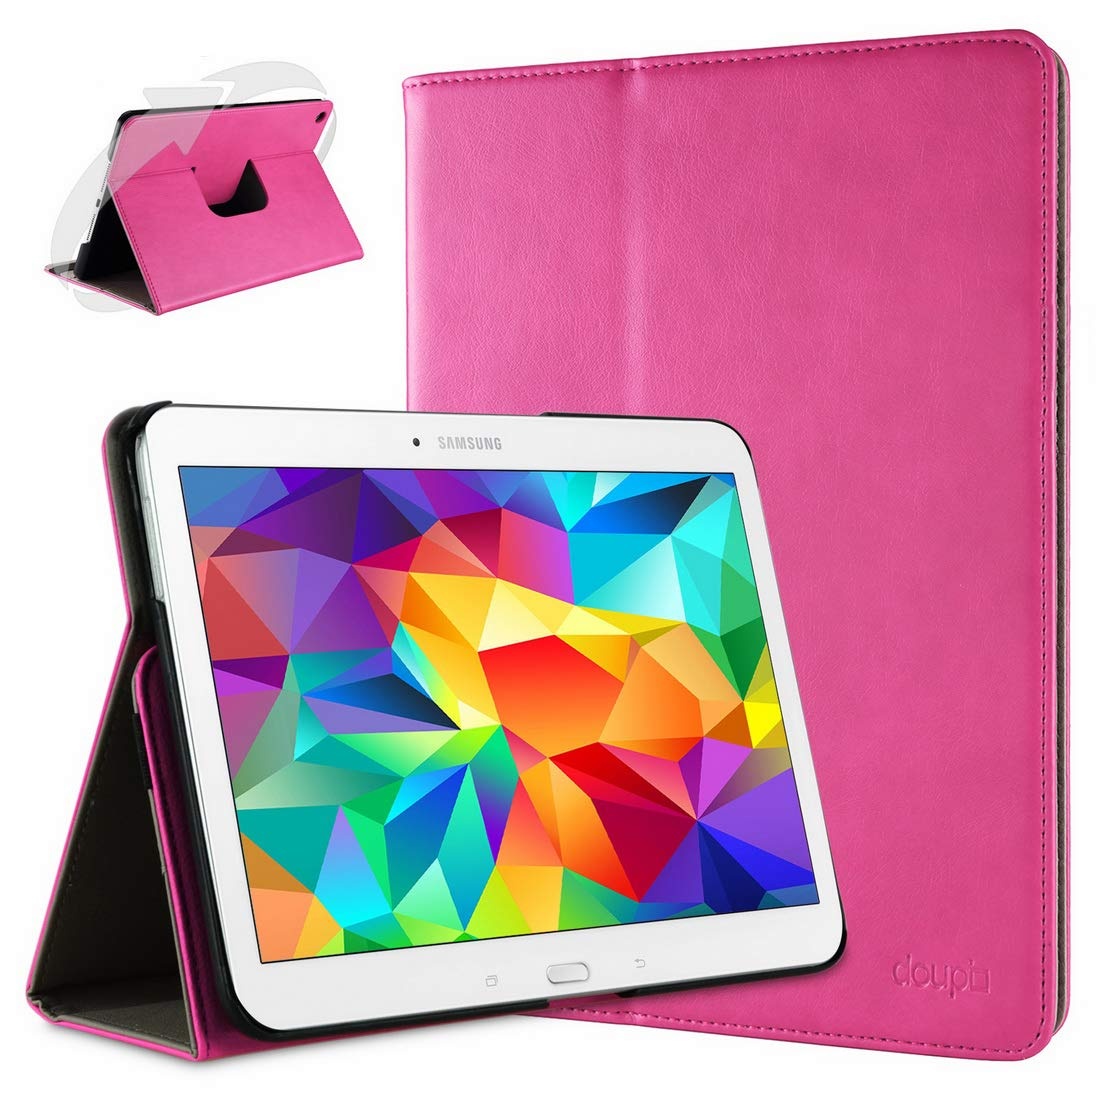 doupi Deluxe Schutzhülle für Samsung Galaxy Tab 4 (10,1 Zoll), Smart Case Sleep/Wake Funktion 360 Grad drehbar Schutz Hülle Ständer Cover Tasche, pink